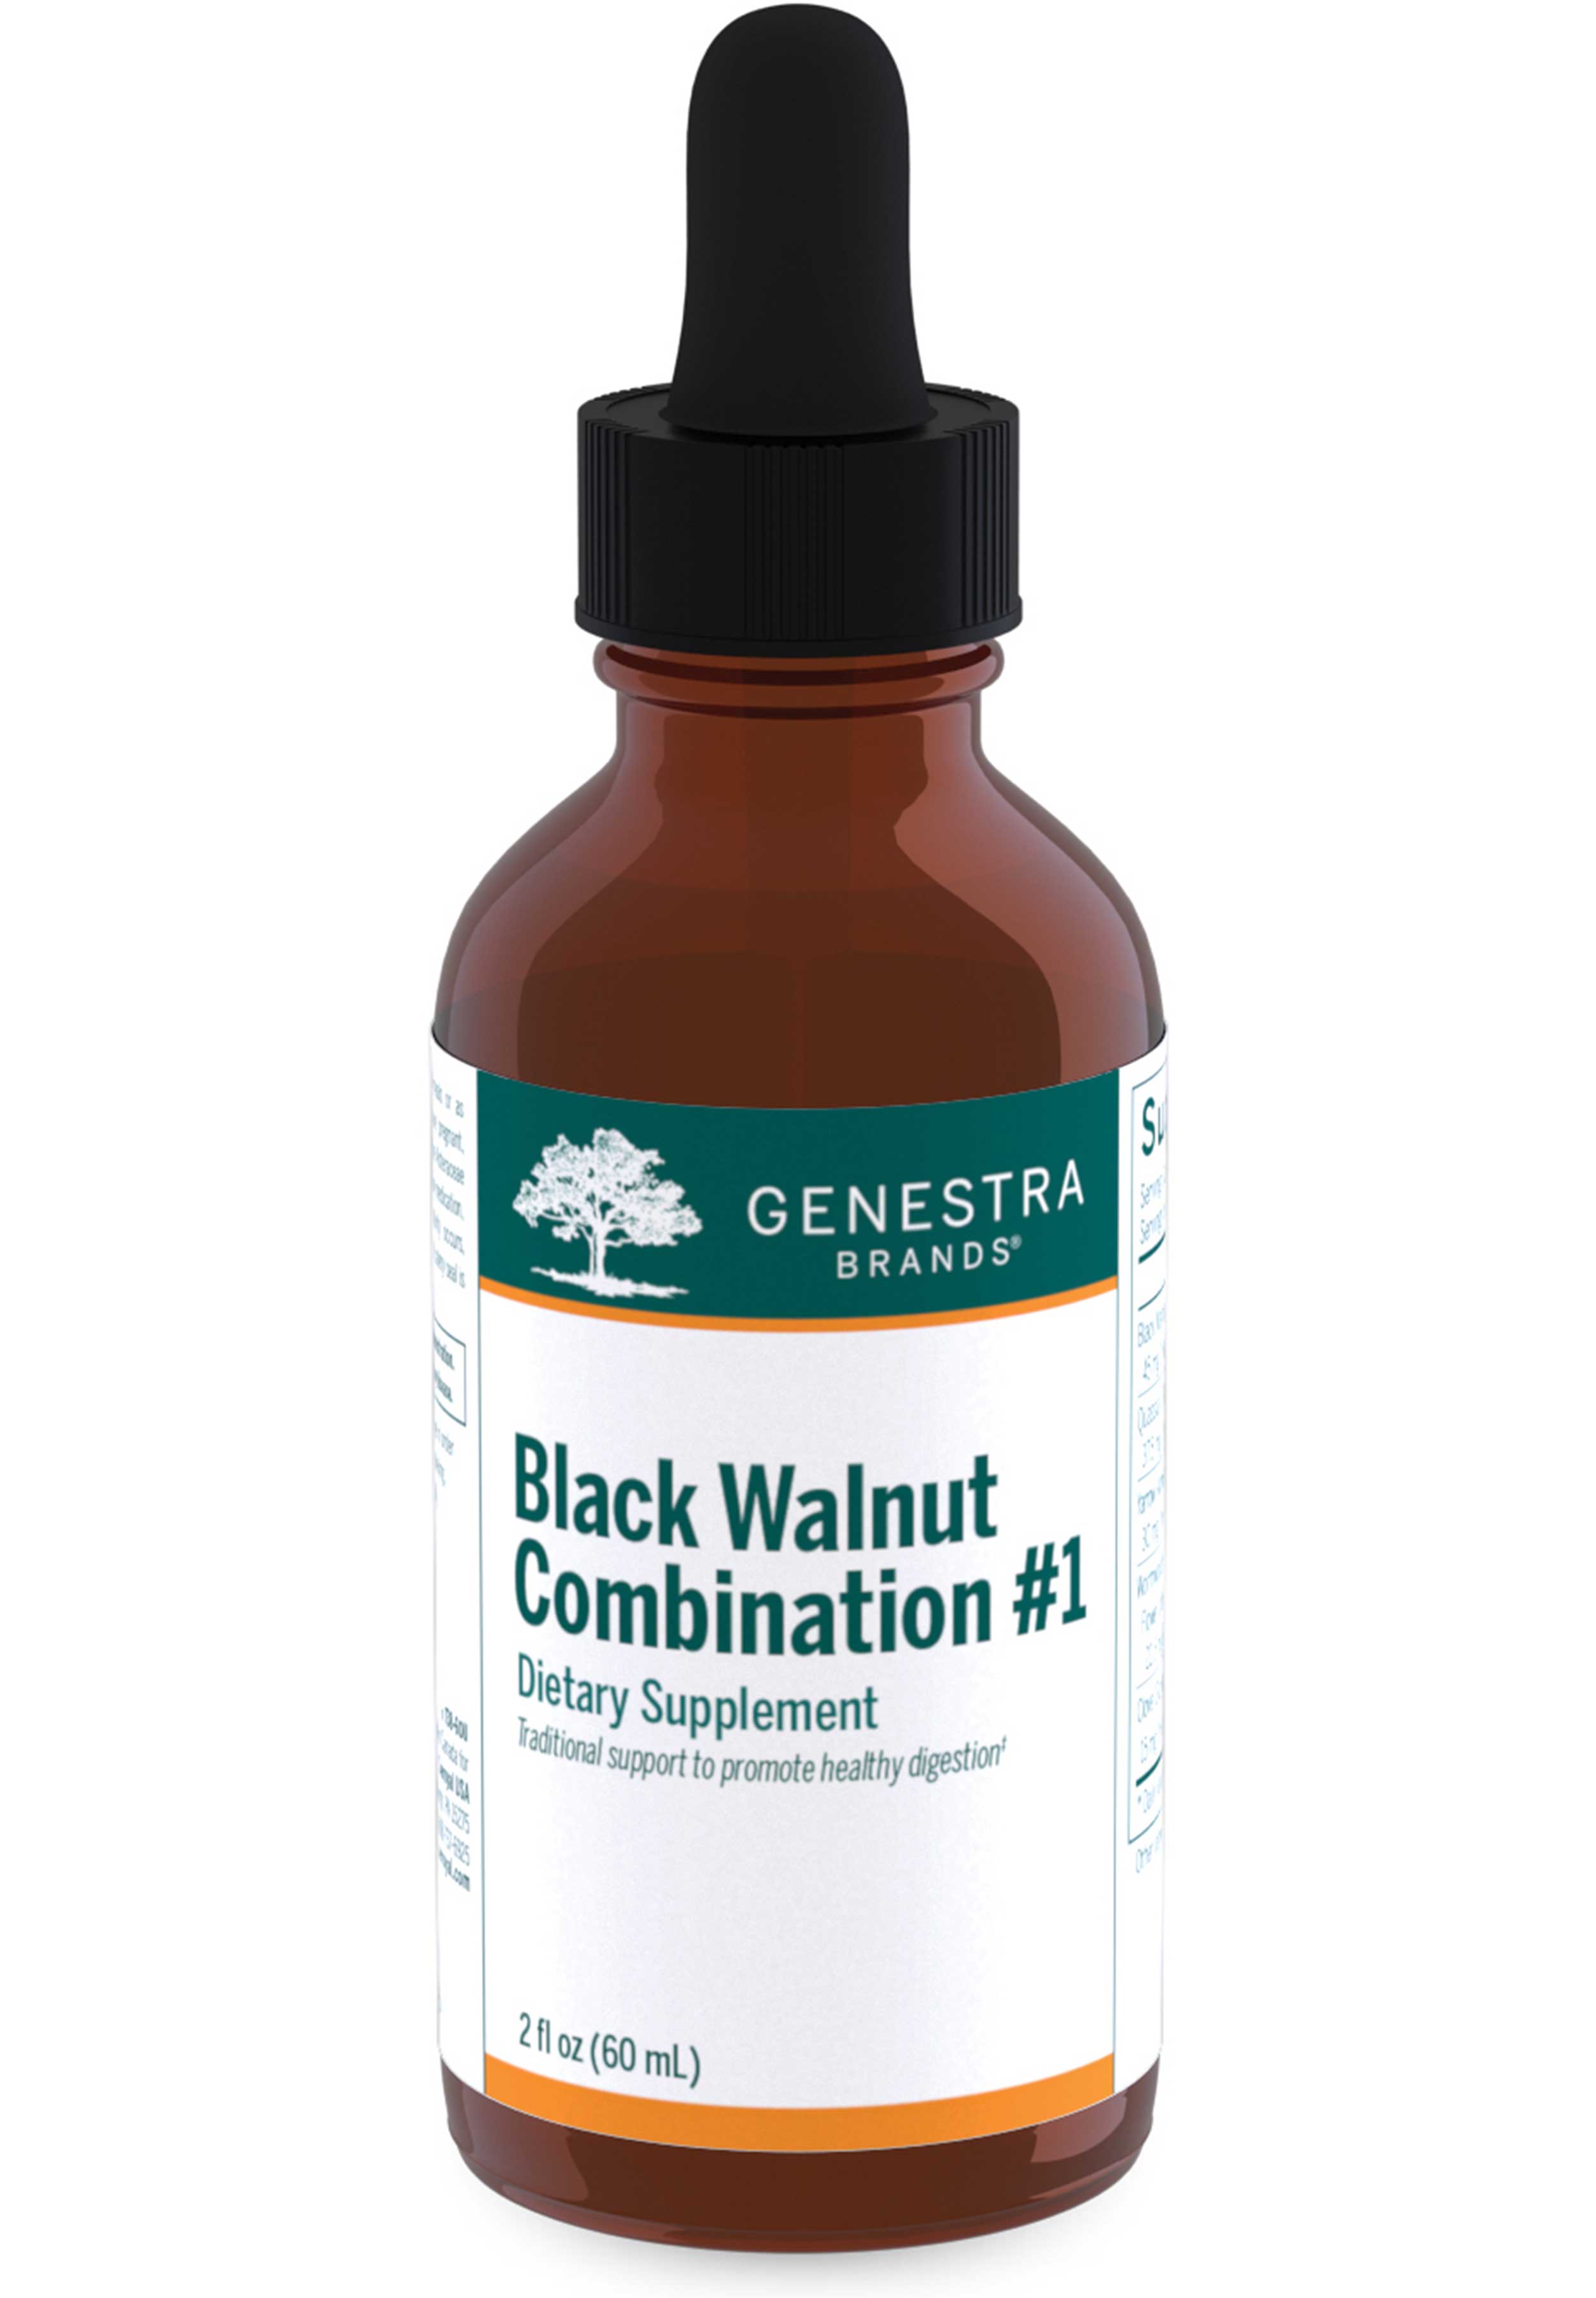 Genestra Brands Black Walnut Combination #1